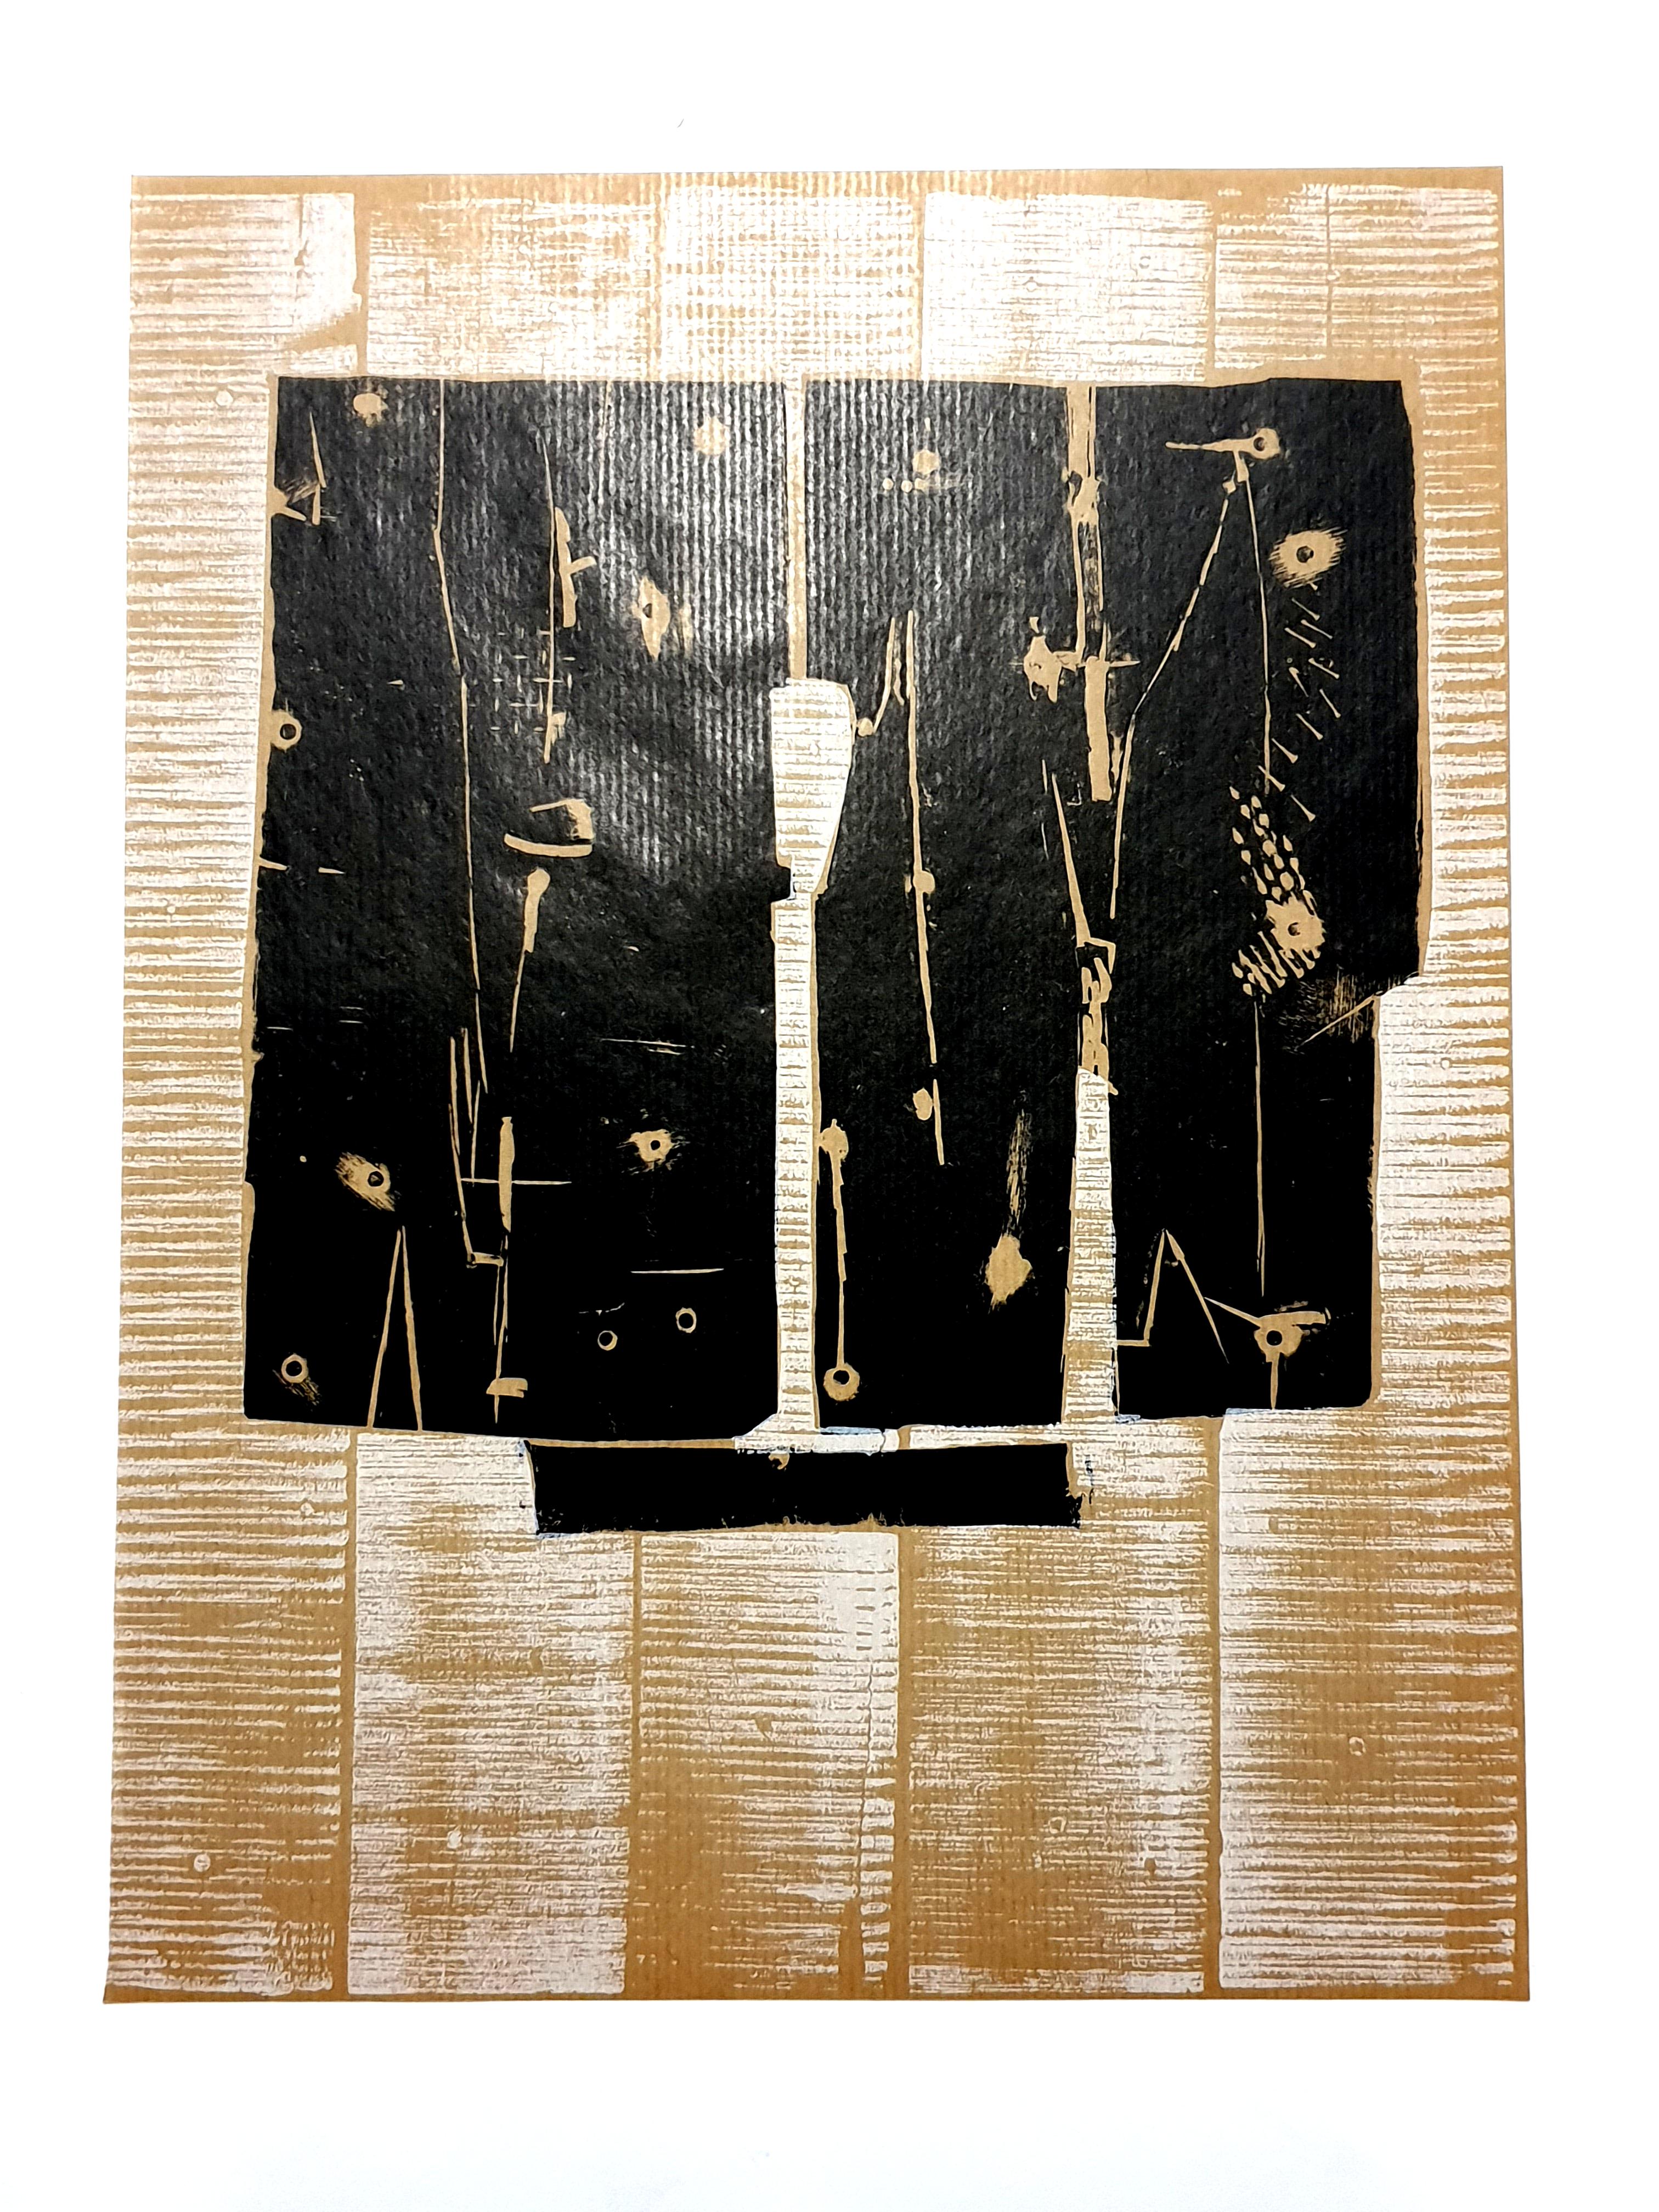 Pietro Consagra –  Komposition - Original-Radierung
1959
Abmessungen: 32 x 24 cm
Aus der Kunstzeitschrift XXe siècle
Unsigniert und nicht nummeriert wie ausgestellt